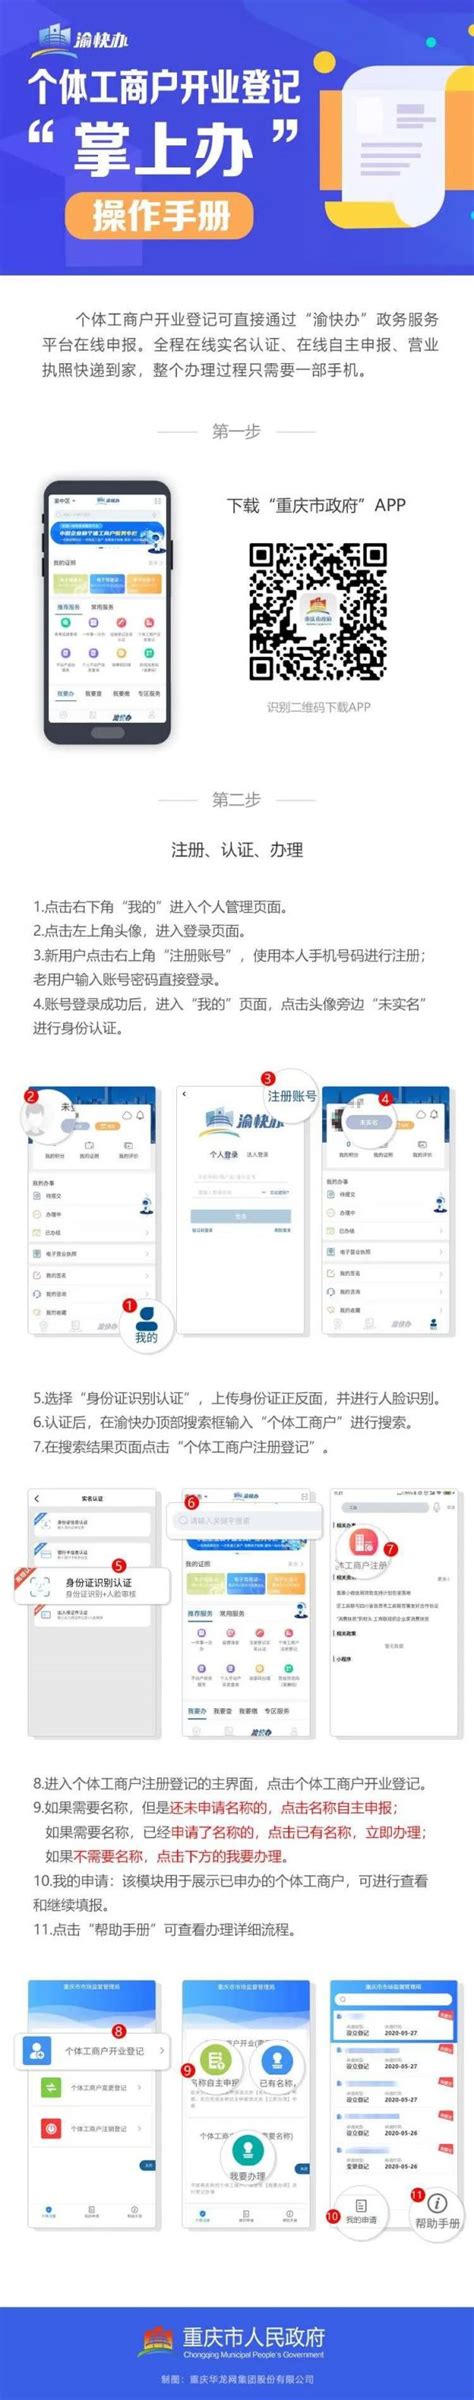 重庆营业执照怎样网上公示